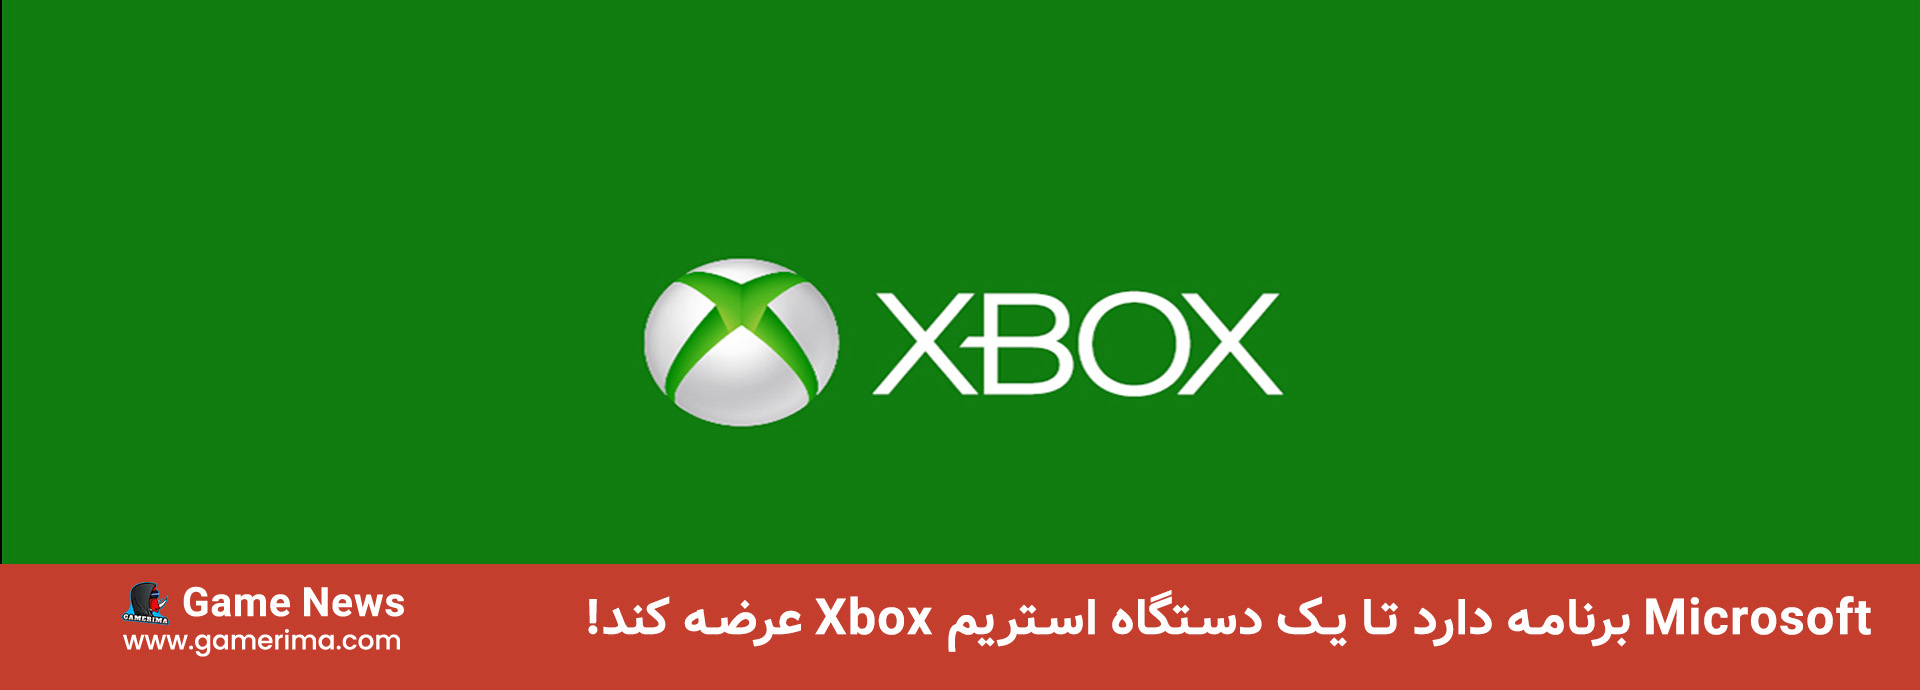 Microsoft برنامه دارد تا یک دستگاه استریم Xbox عرضه کند!